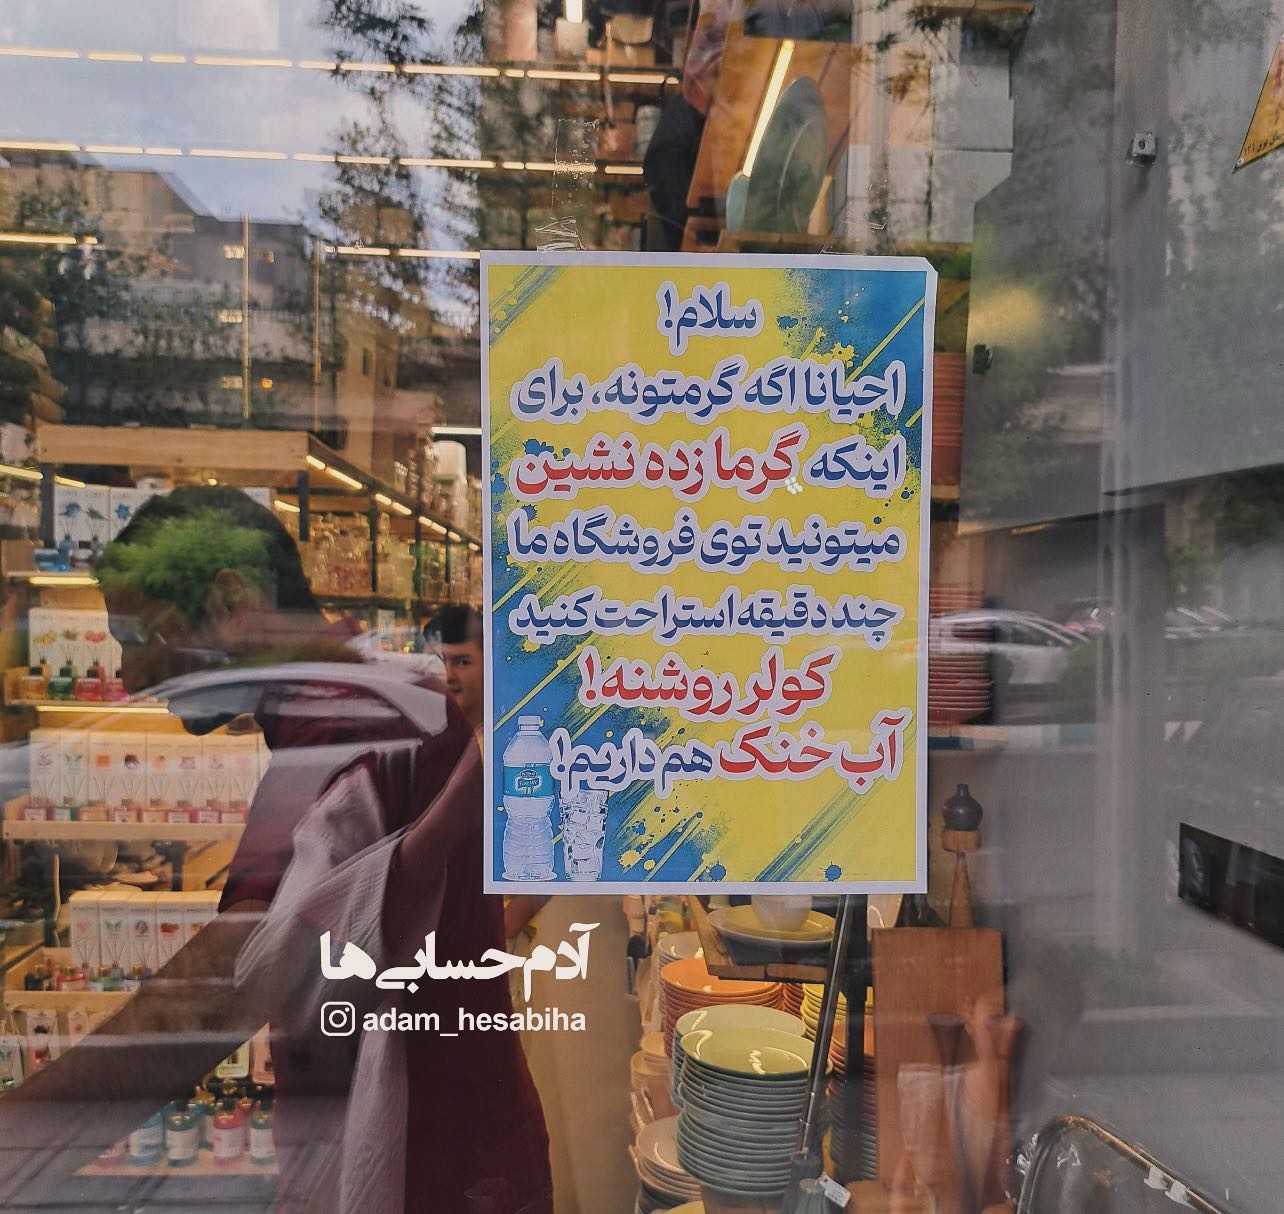 نوشته ای جالب روی شیشه یک مغازه در تهران جلب توجه کرد